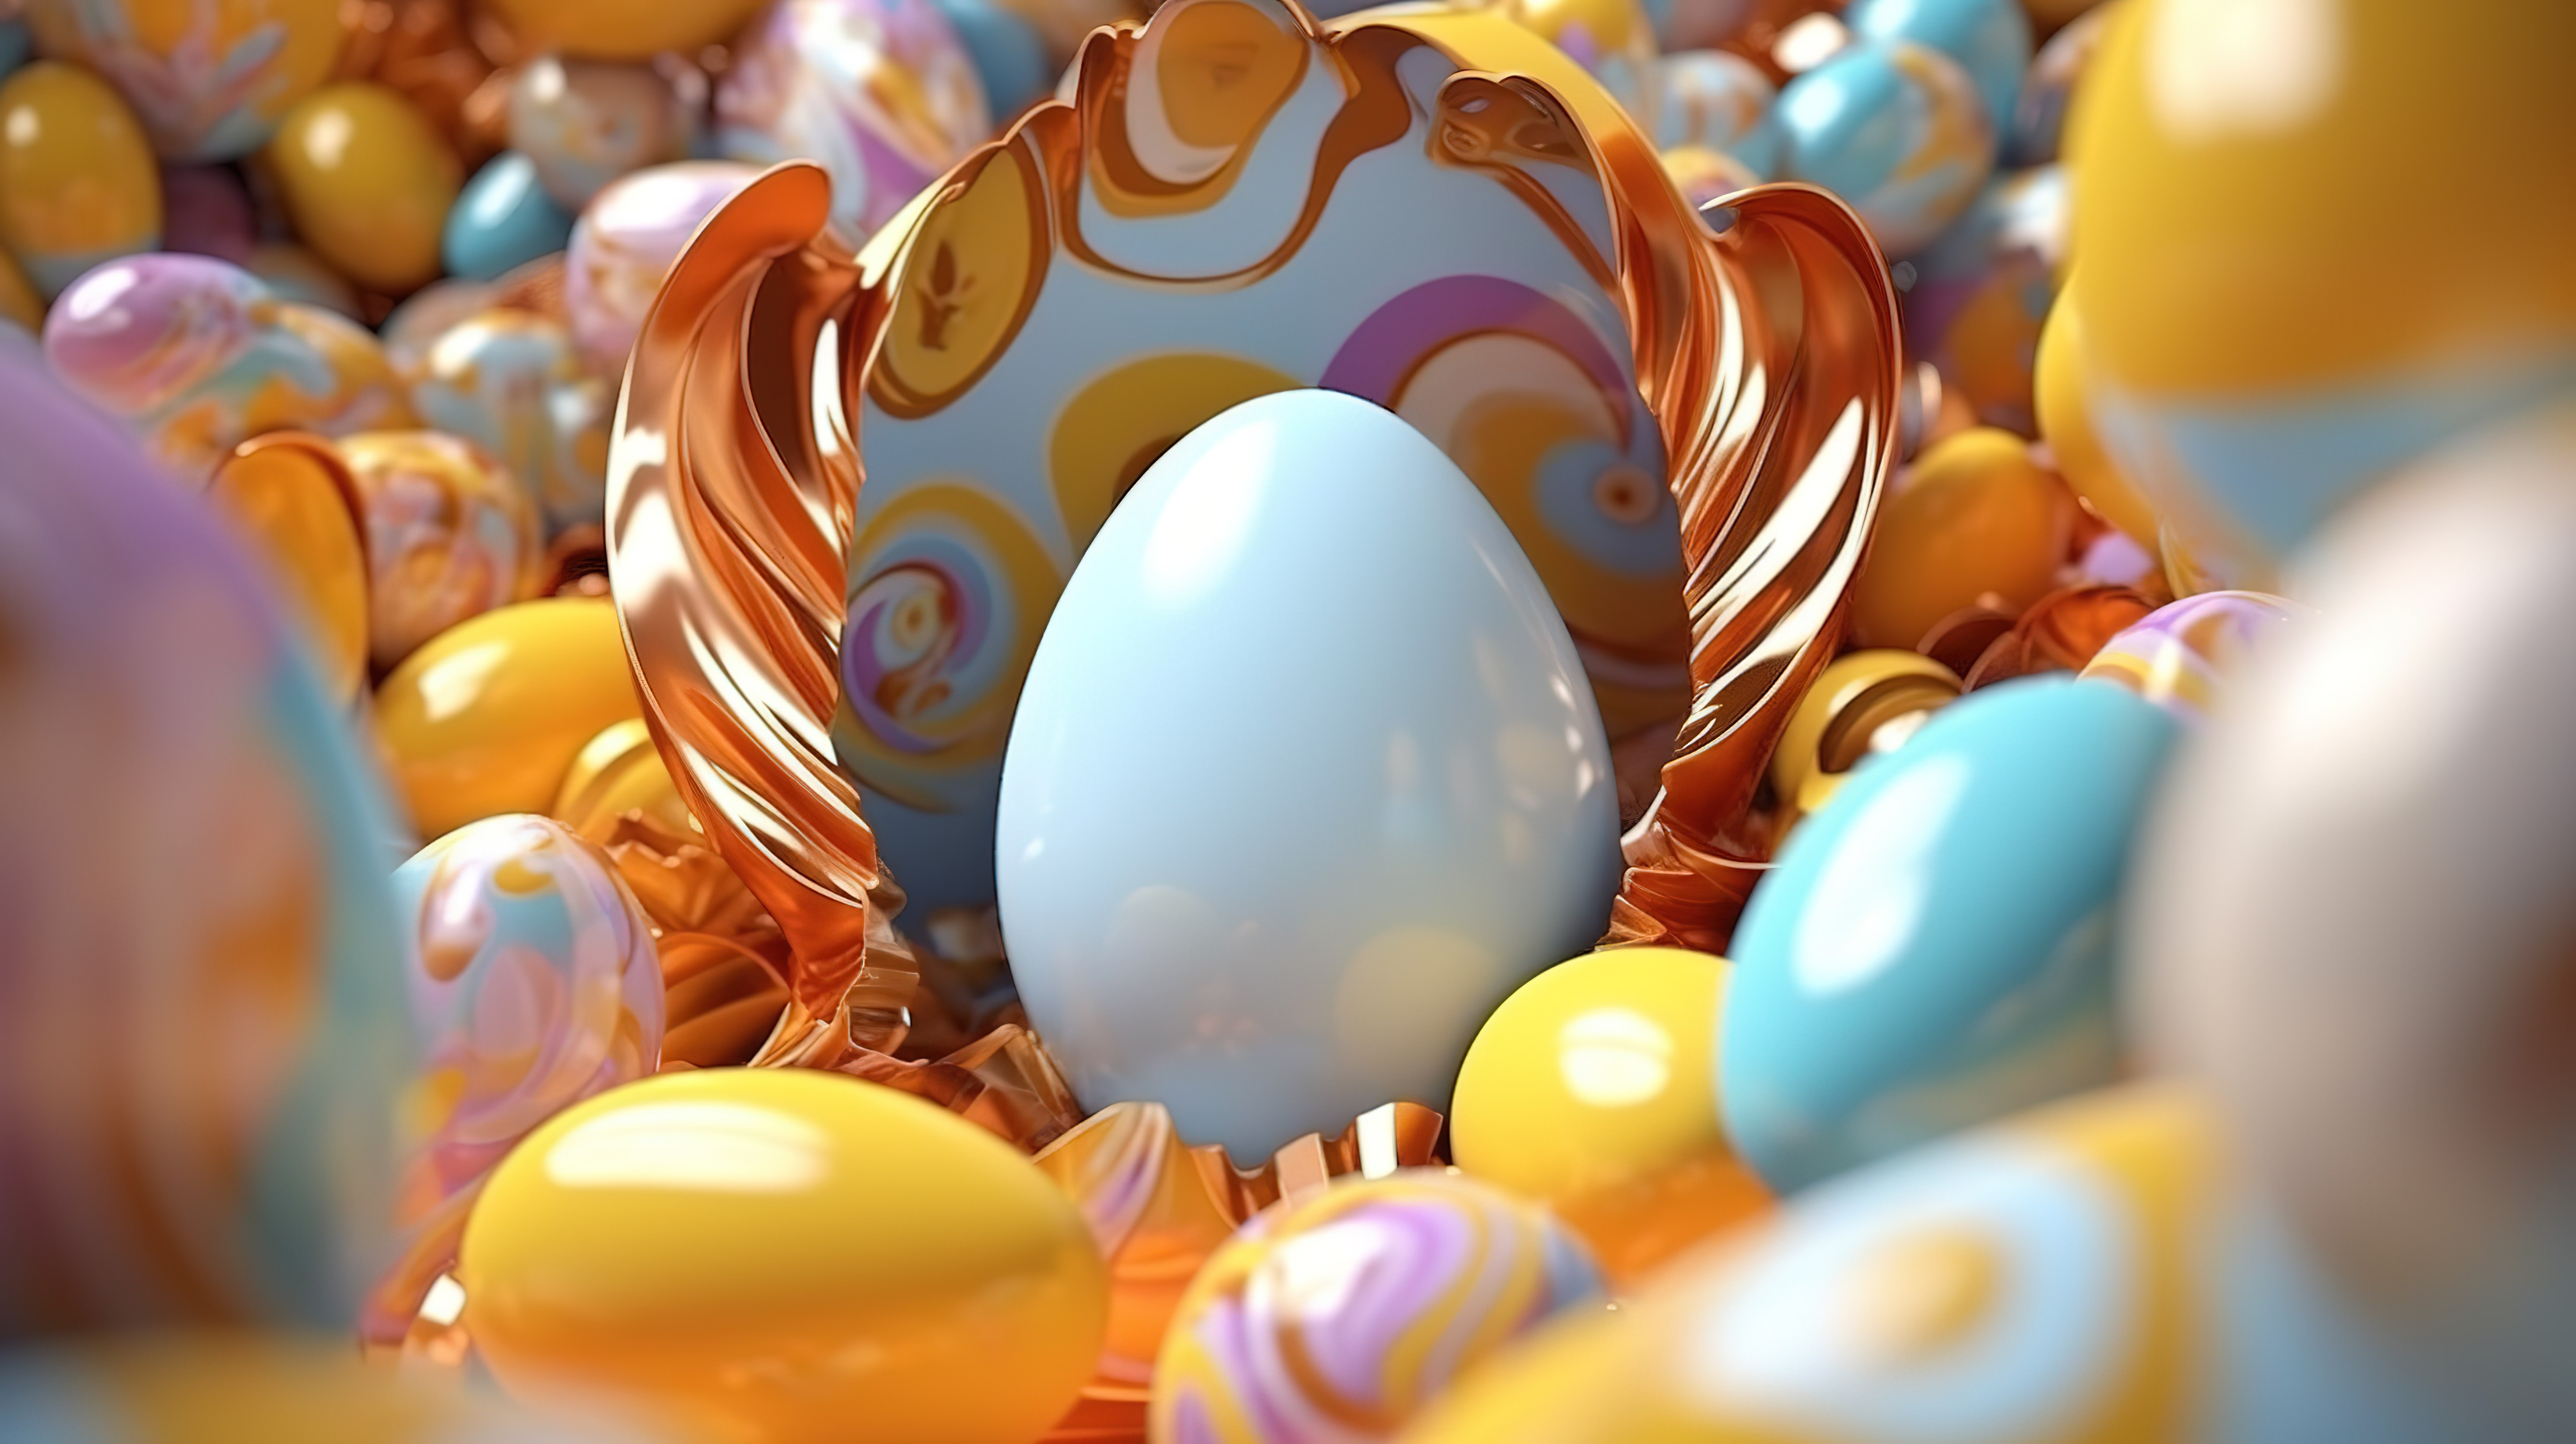 复活节主题彩蛋组合物以令人惊叹的 3D 渲染呈现精彩的展示图片